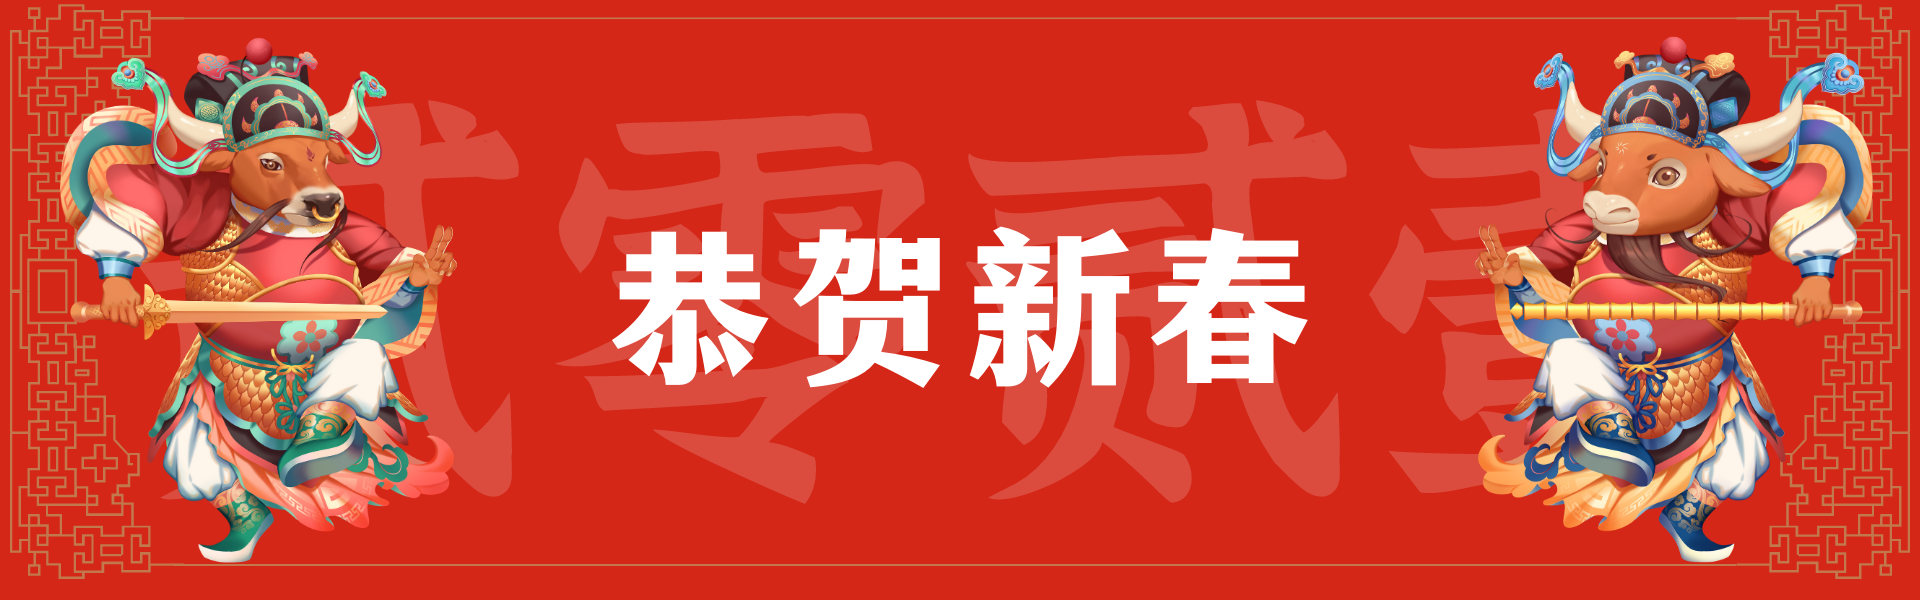 红白色新年牛年牛门神元素氛围插画中式新年节日分享中文电商banner-1.png